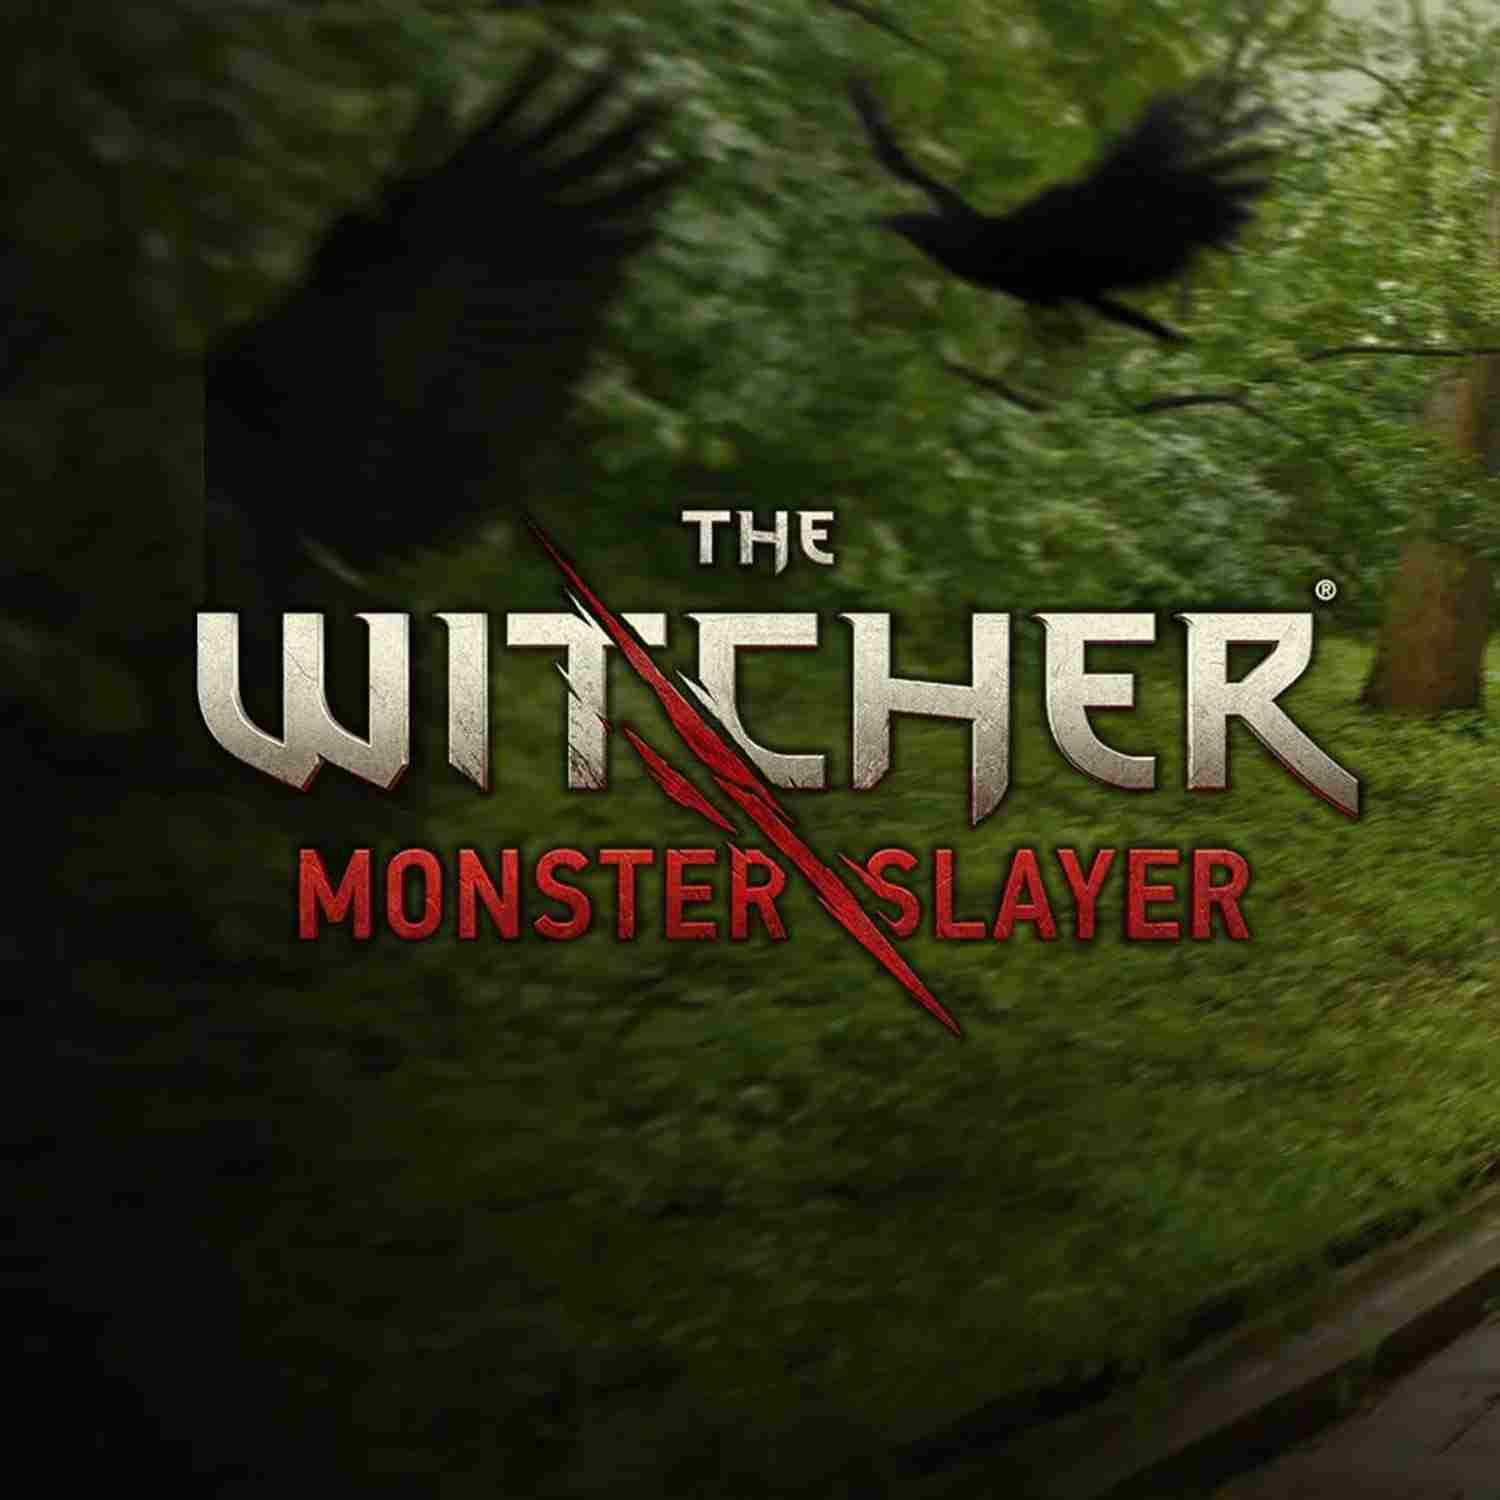 The Witcher tendrá su propio juego móvil con realidad aumentada